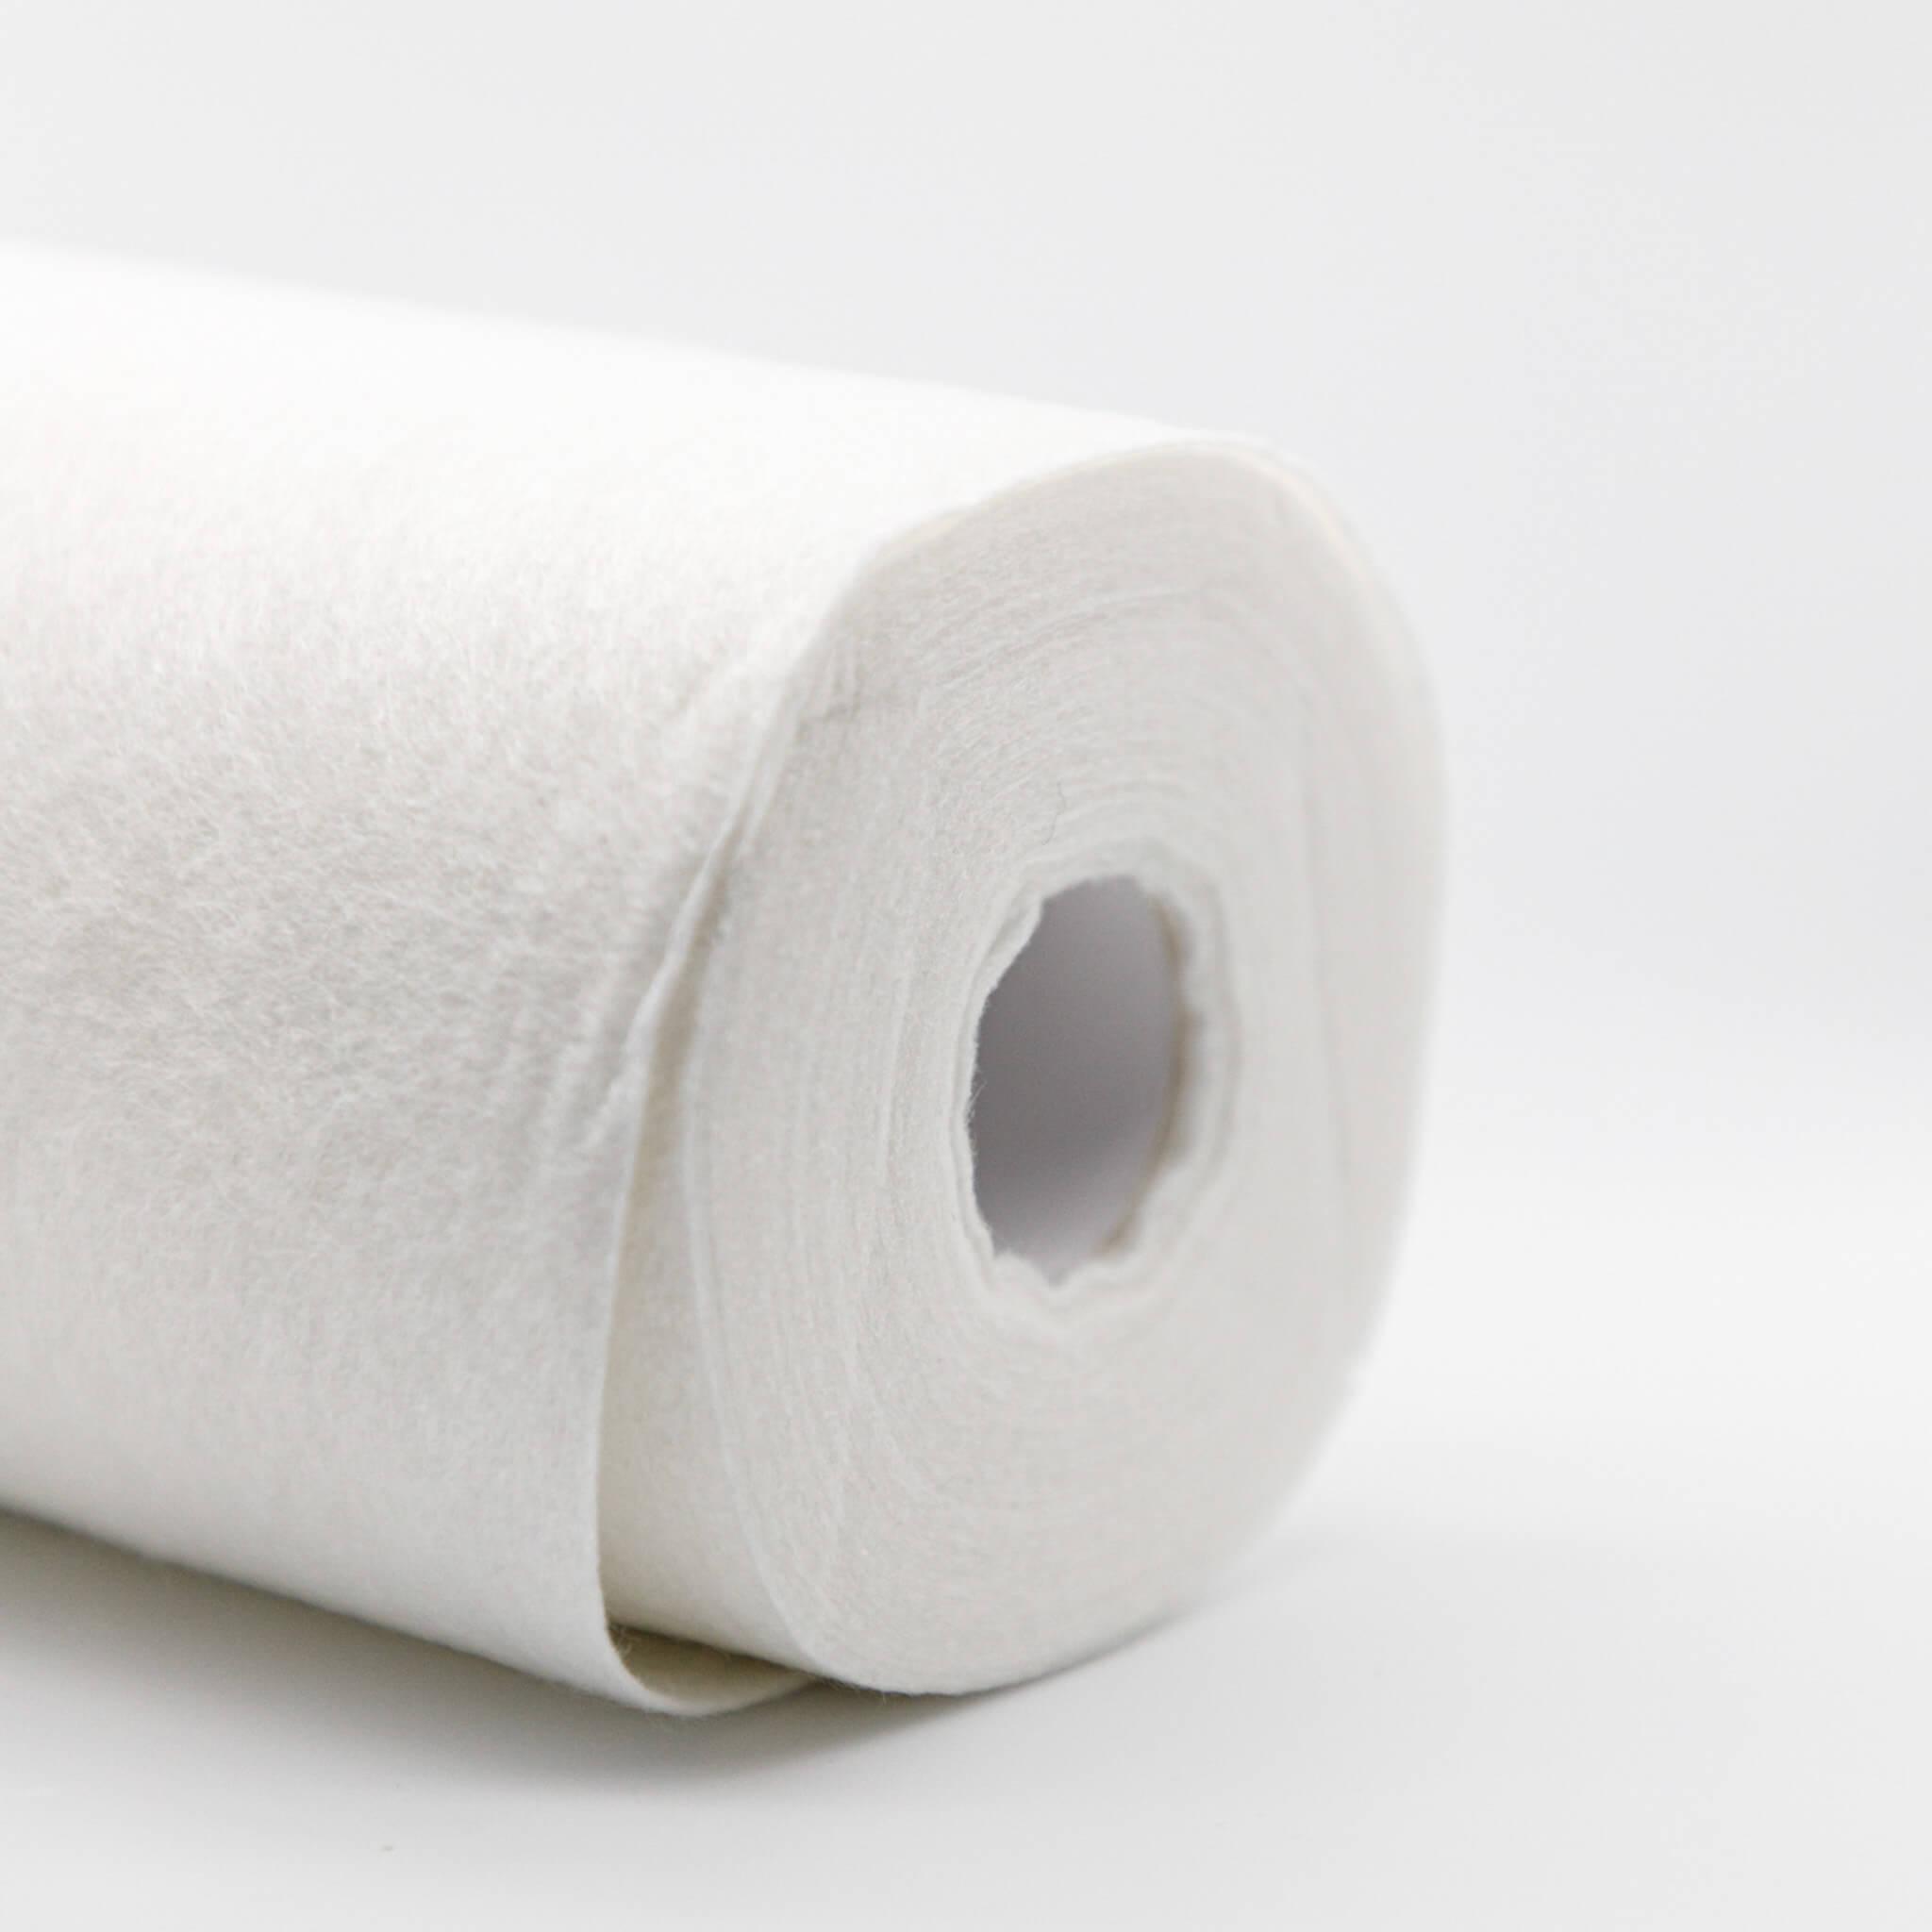 Best Reusable Paper Towels